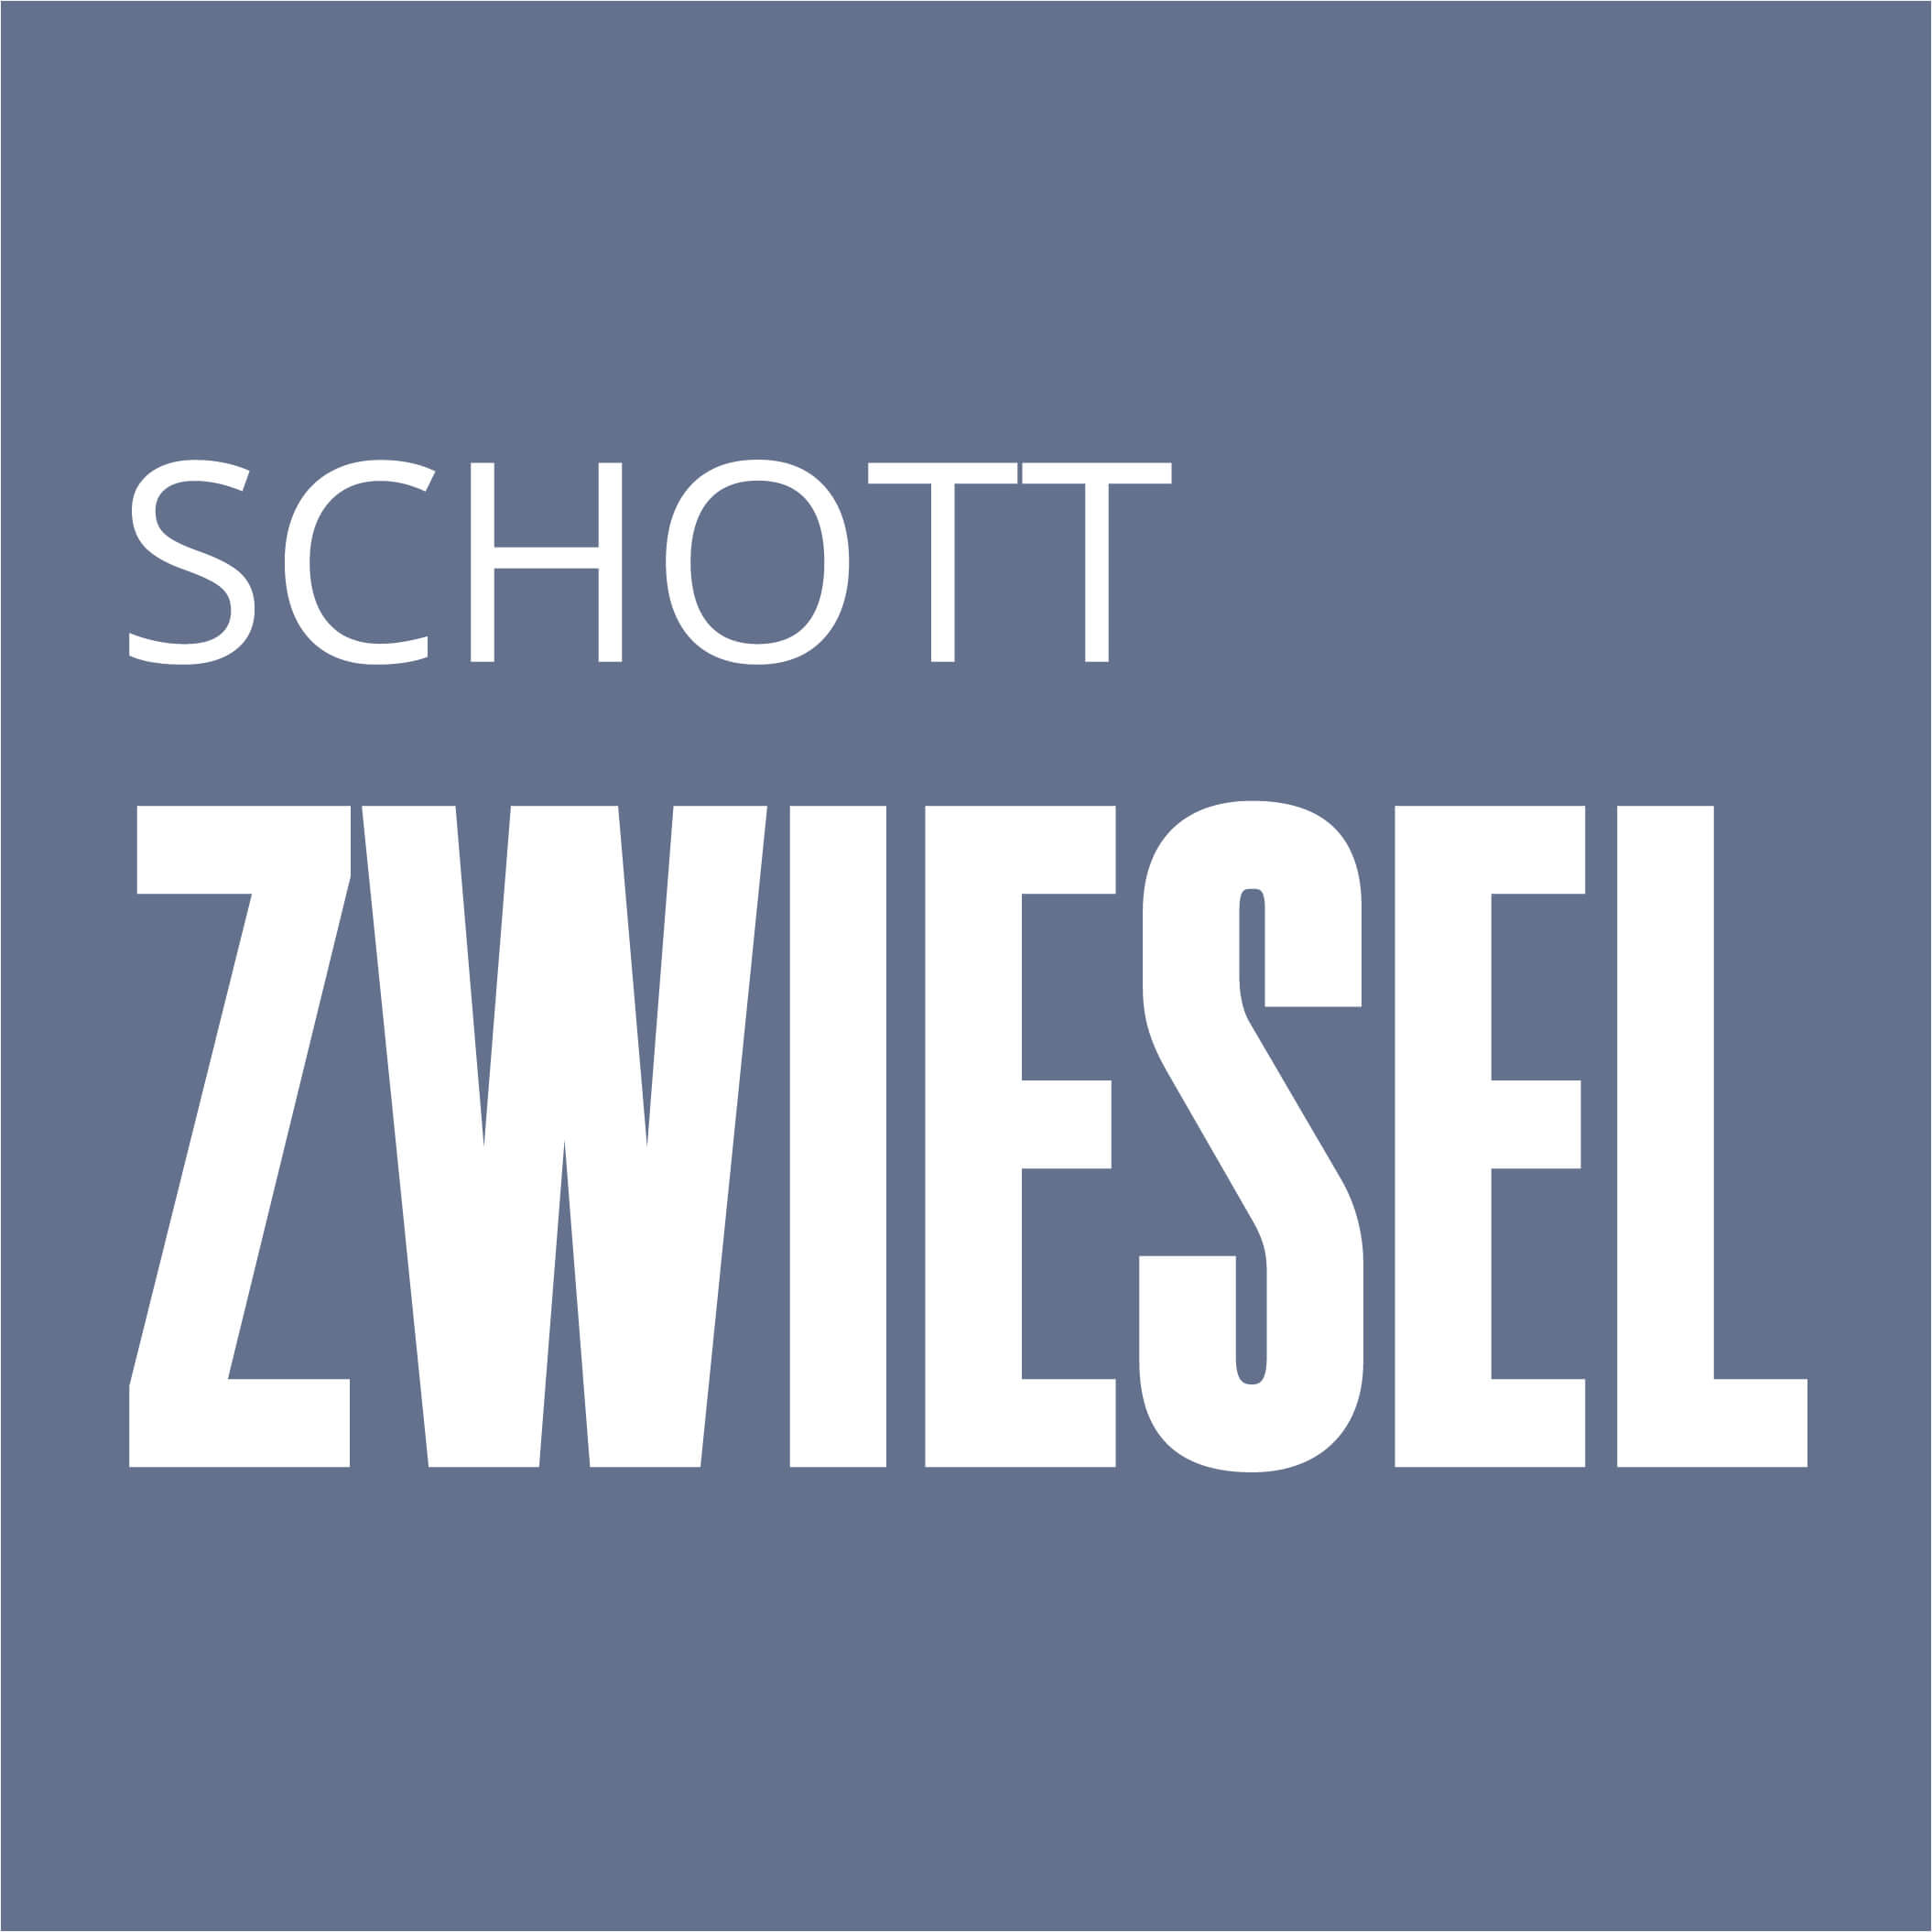 Scott-Zwiesel